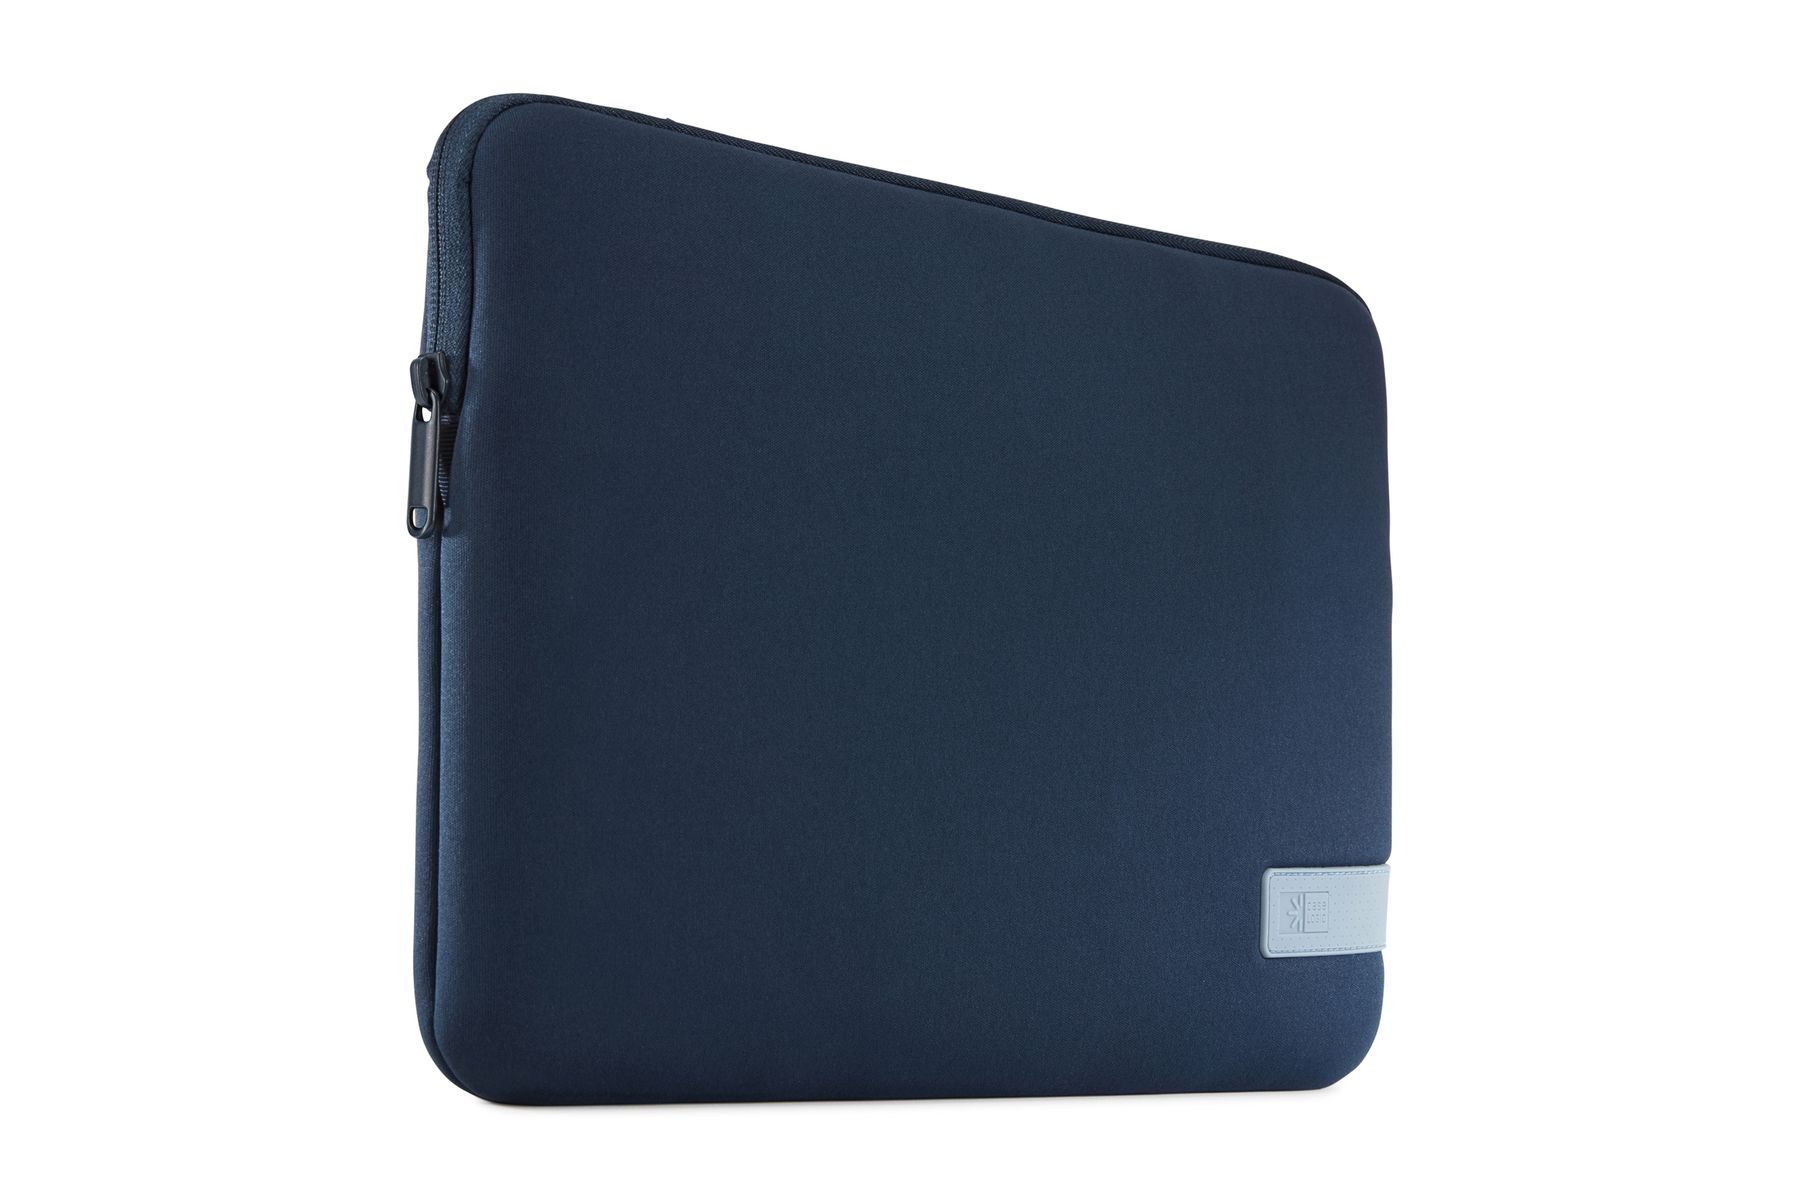 Case Logic Reflect Laptop Sleeve 13" laptop sleeve